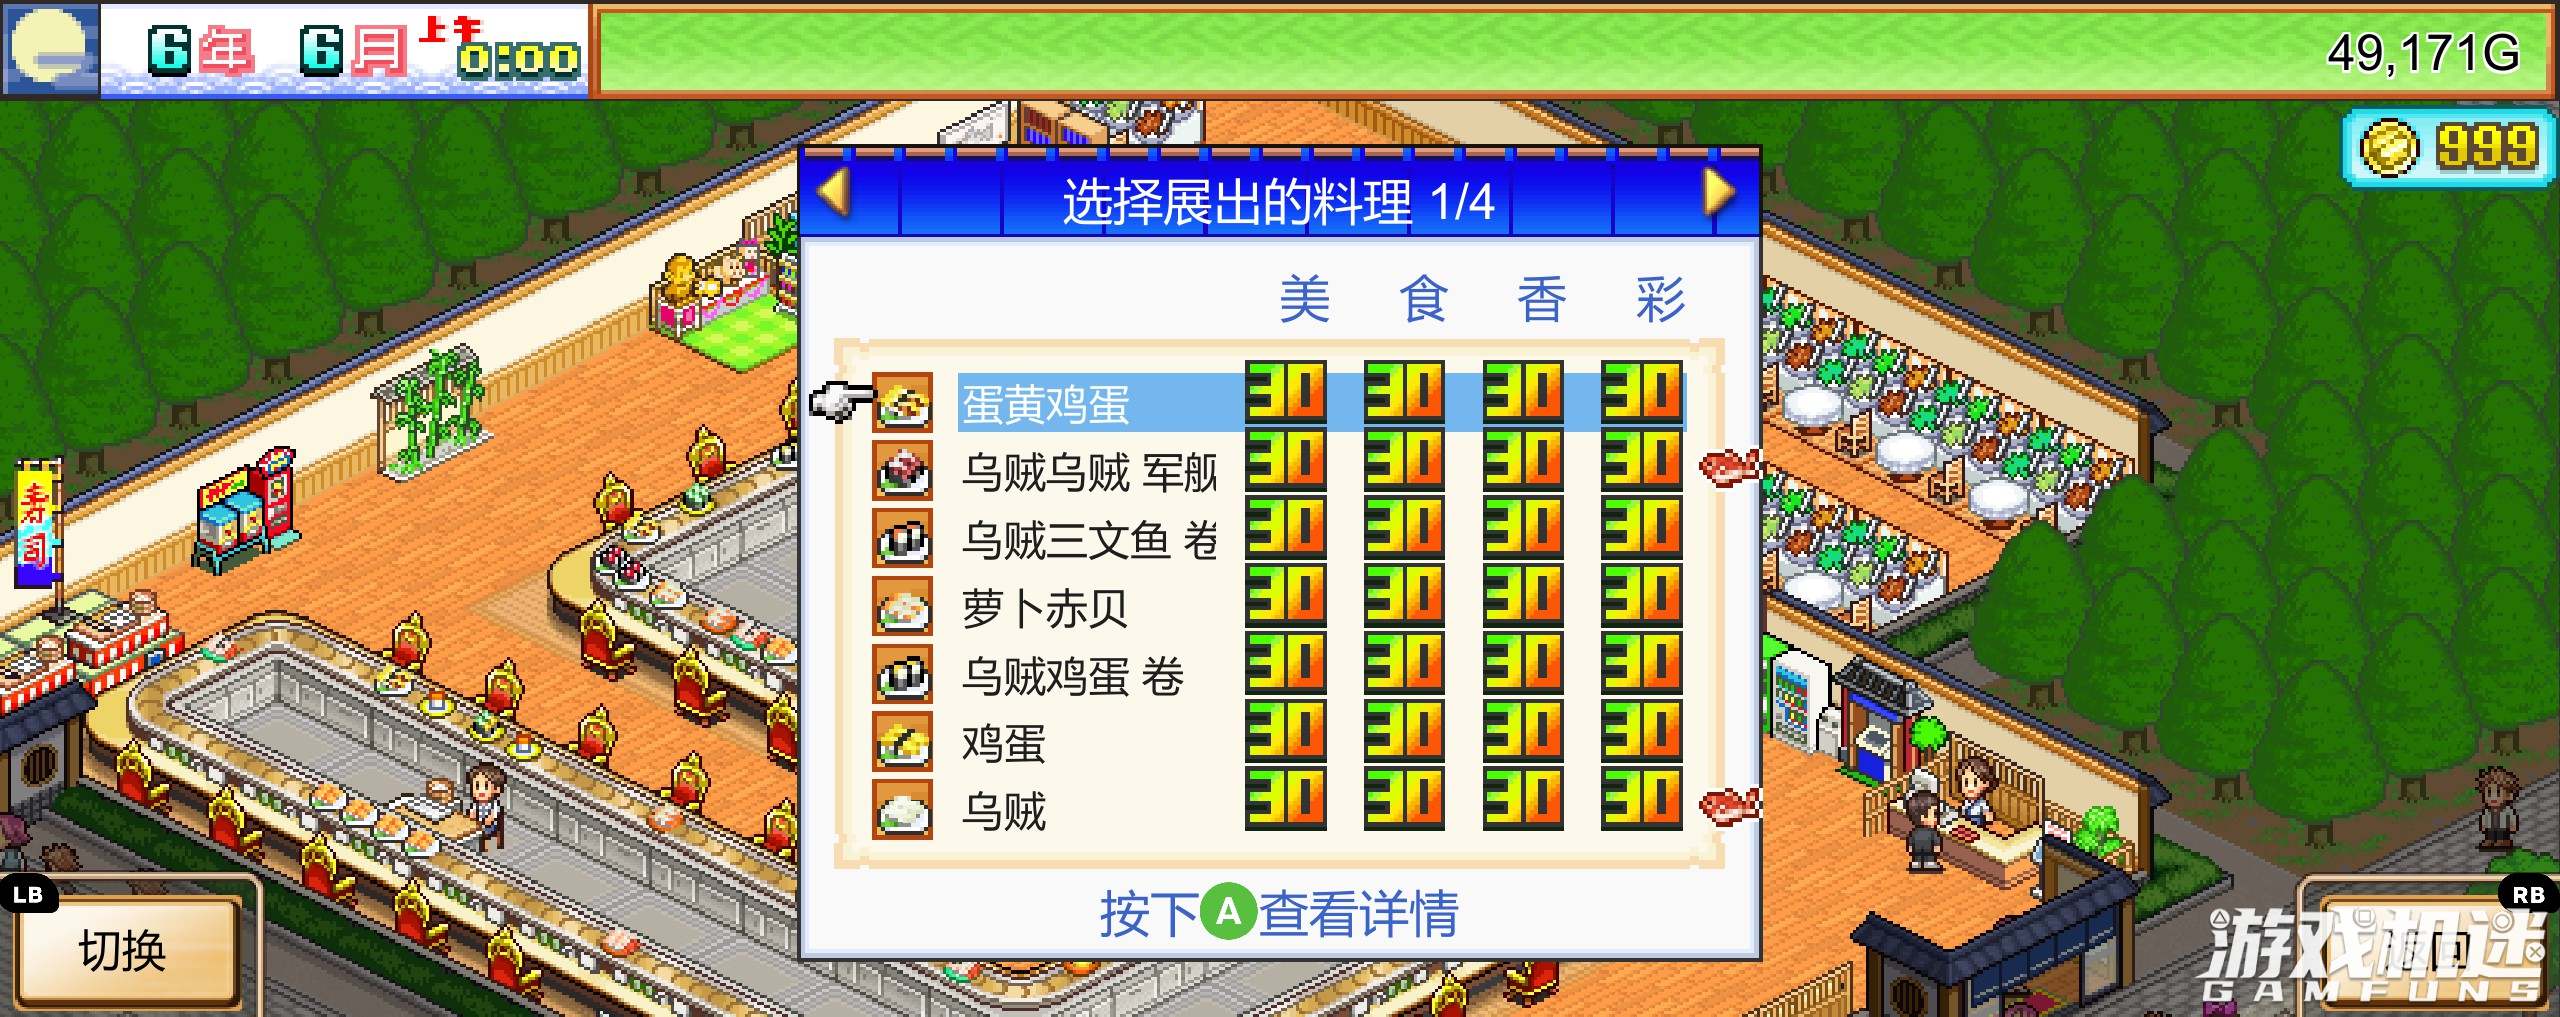 海鲜寿司物语游戏评测20220613002